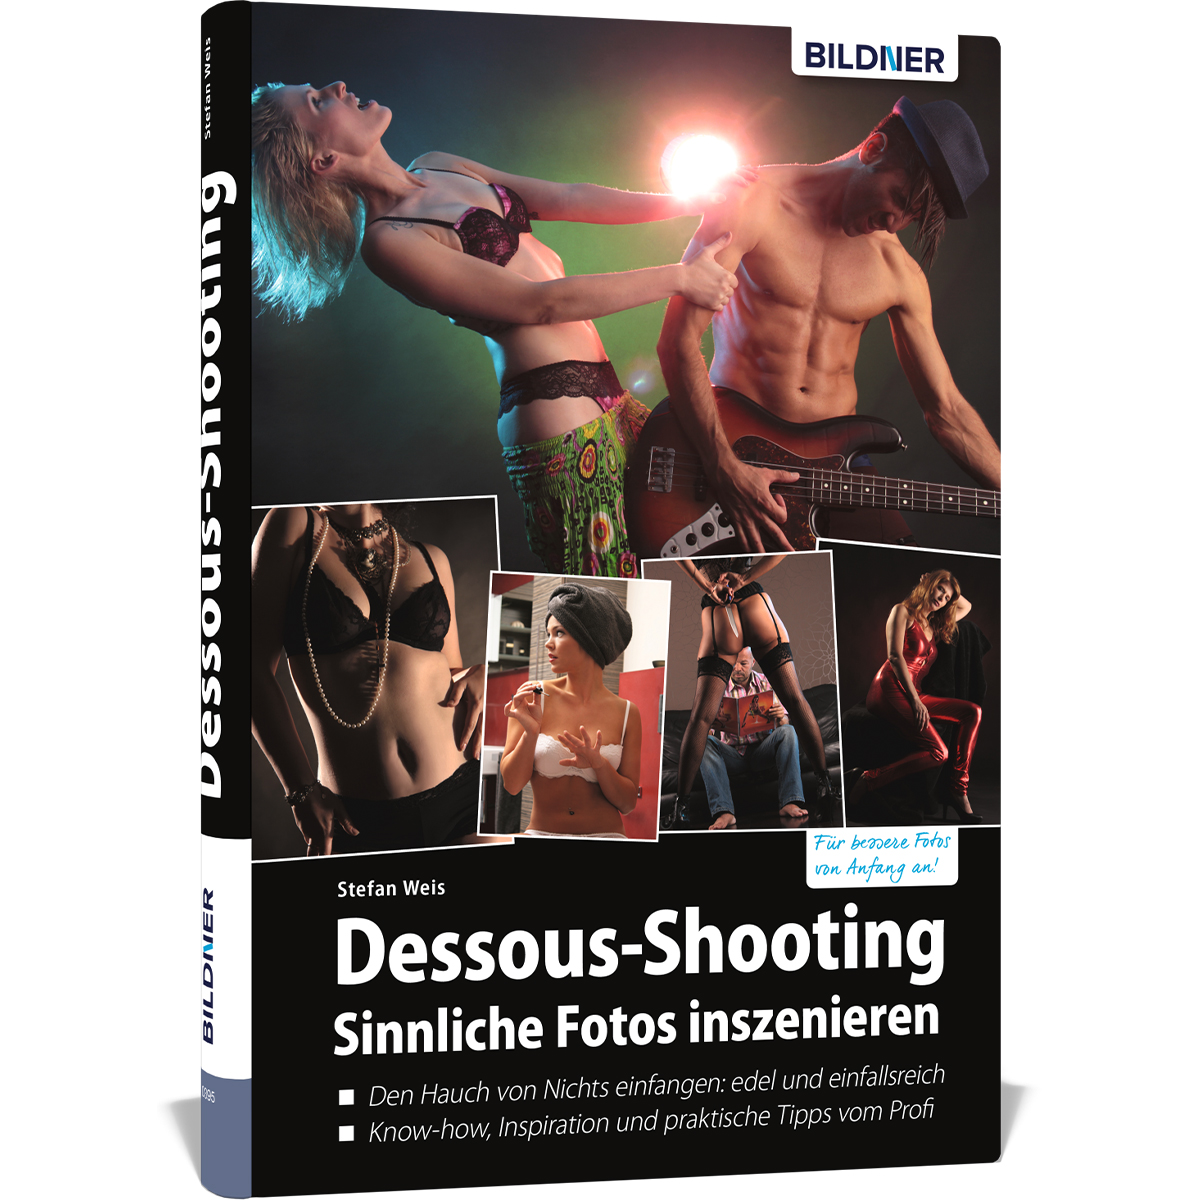 Dessous-Shooting - Sinnliche inszenieren Fotos